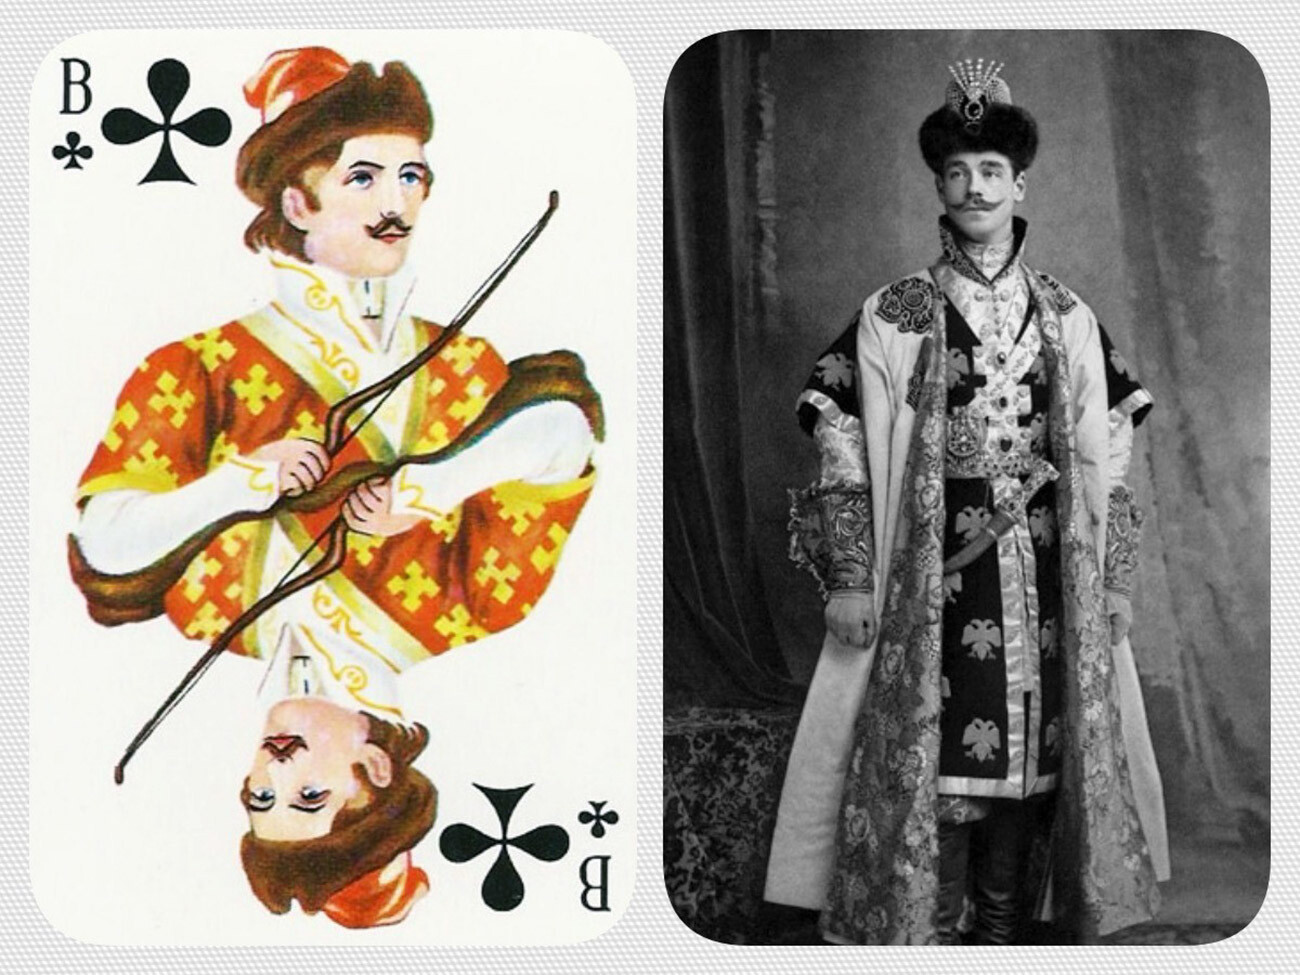 L’apparence de Mikhaïl lors d’un bal costumé en 1903 a servi de modèle pour le valet de trèfle dans les célèbres jeux de cartes de style russe